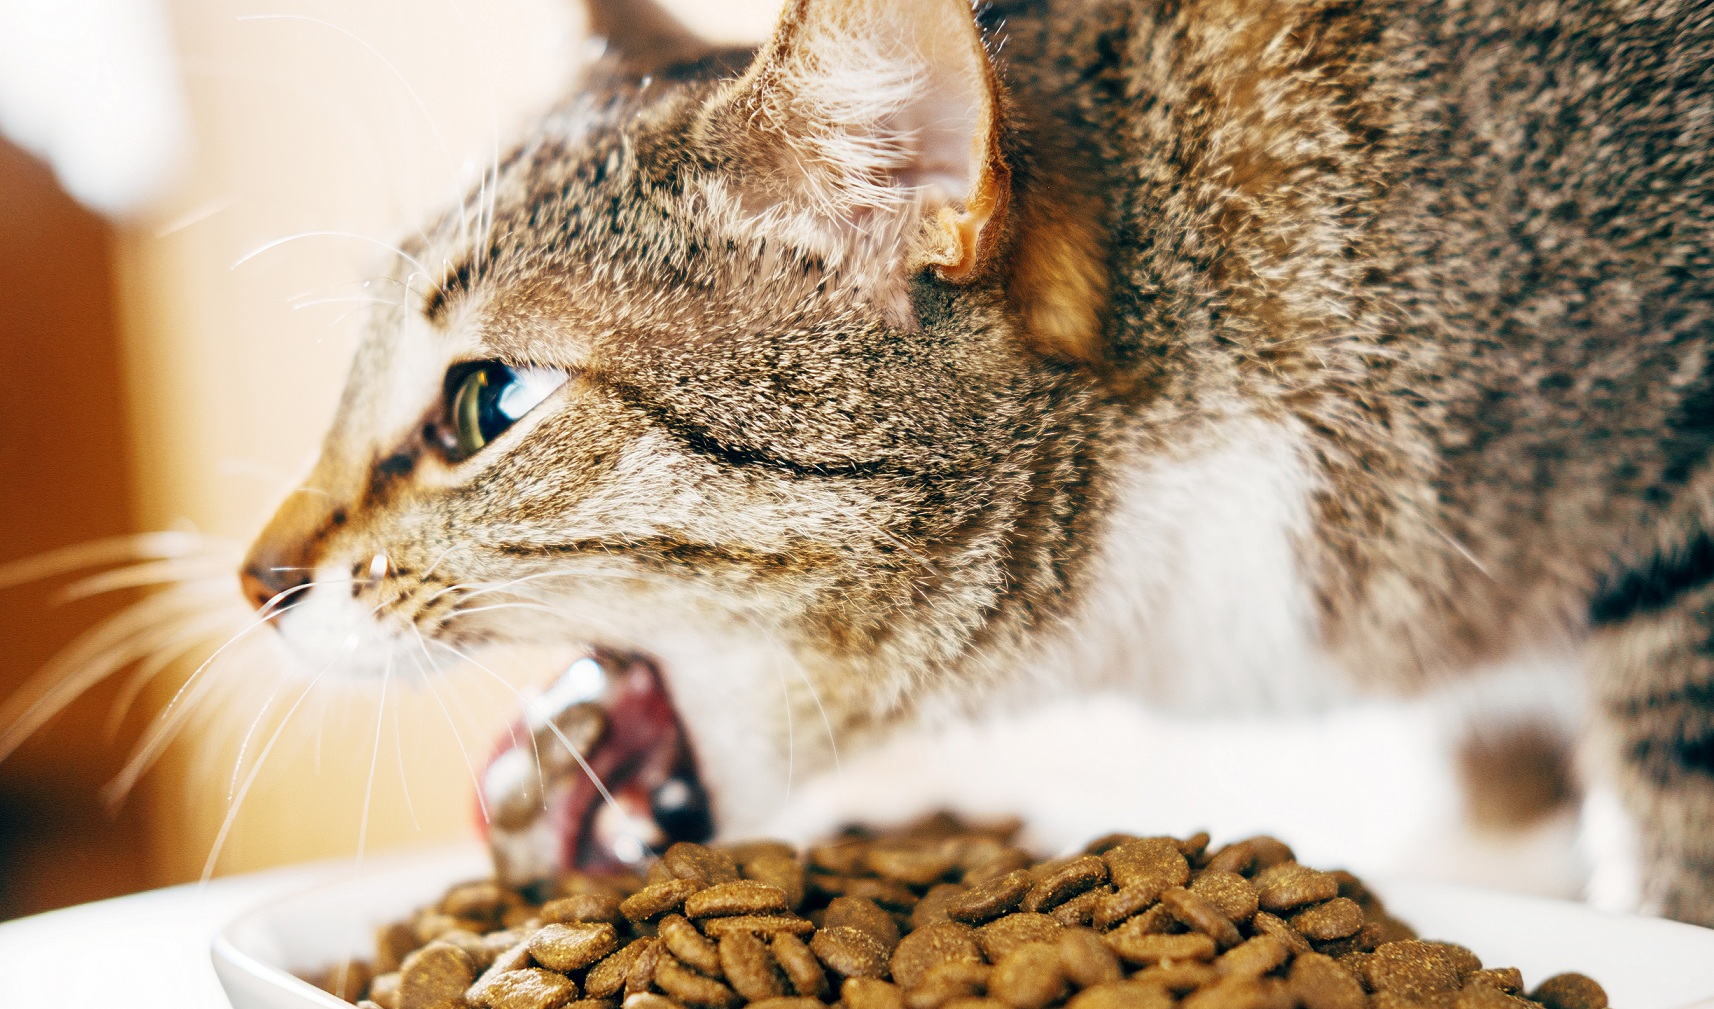 Что делать, если кота или кошку рвет после еды непереваренной пищей: рвота с желчью, пеной и кровью, почему и как лечить в домашних условиях